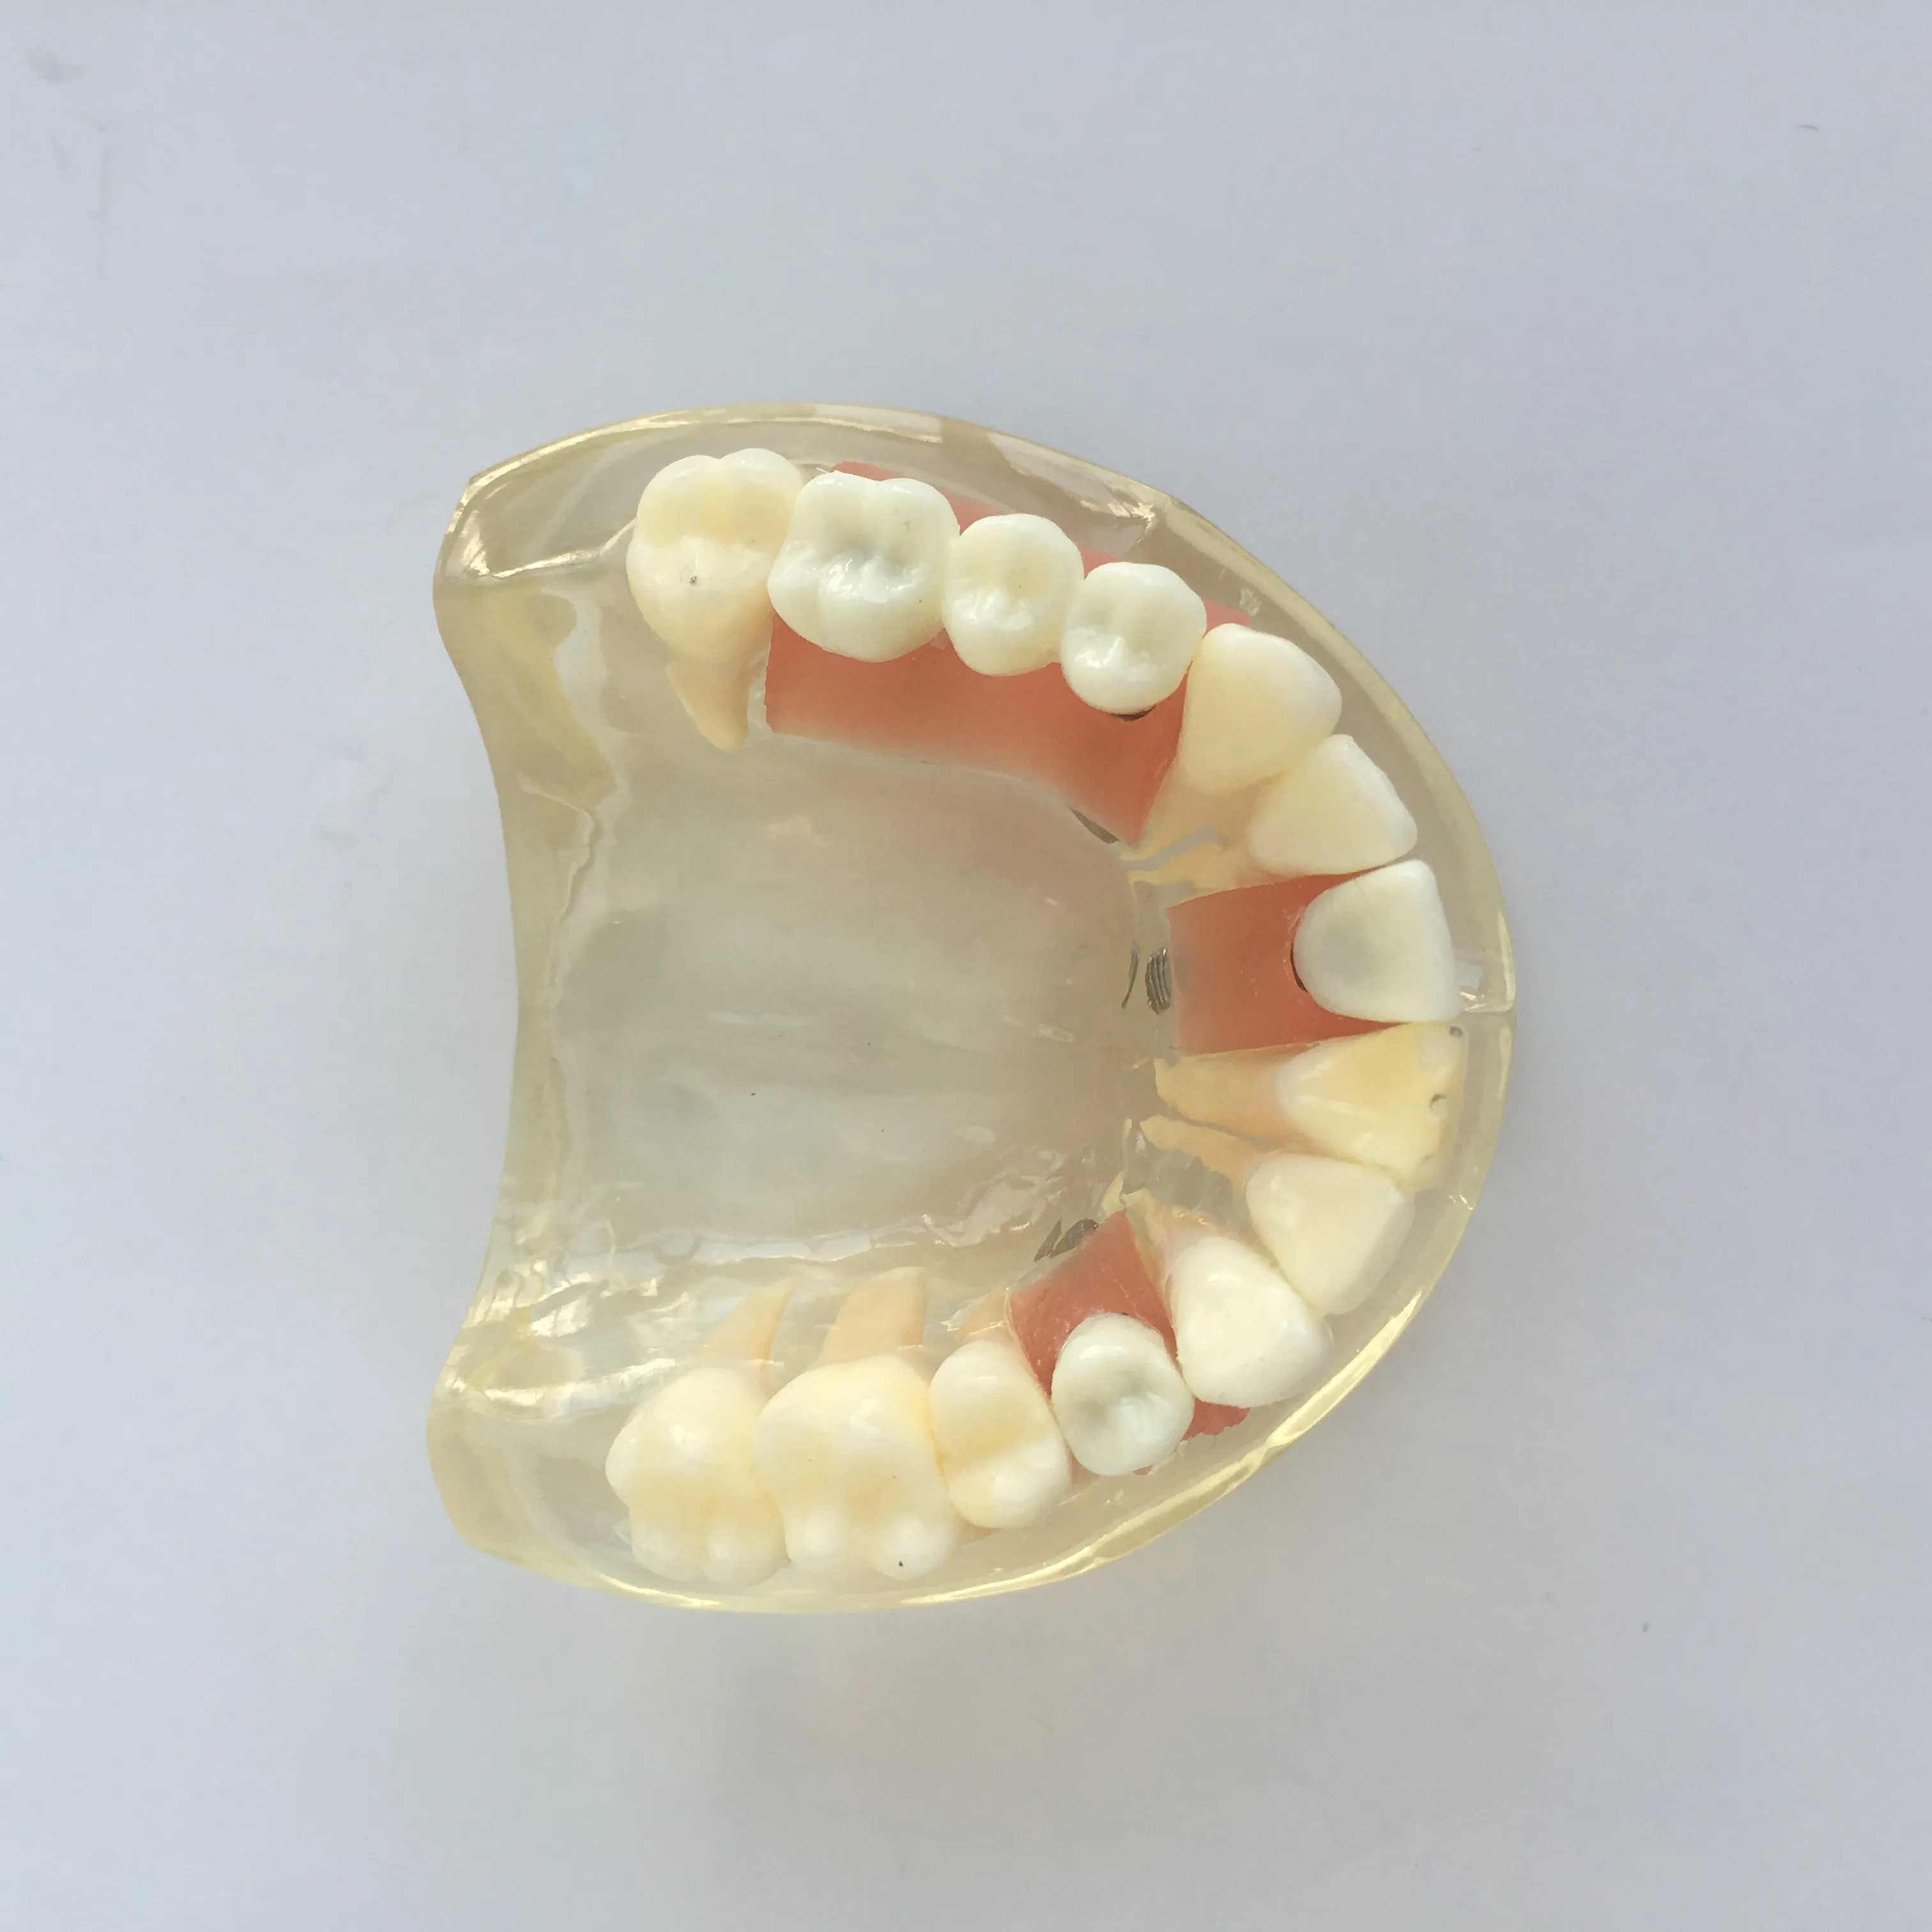 Dental modelo de implante de metade superior dental modelo mostra o pilar da gengiva e ponte